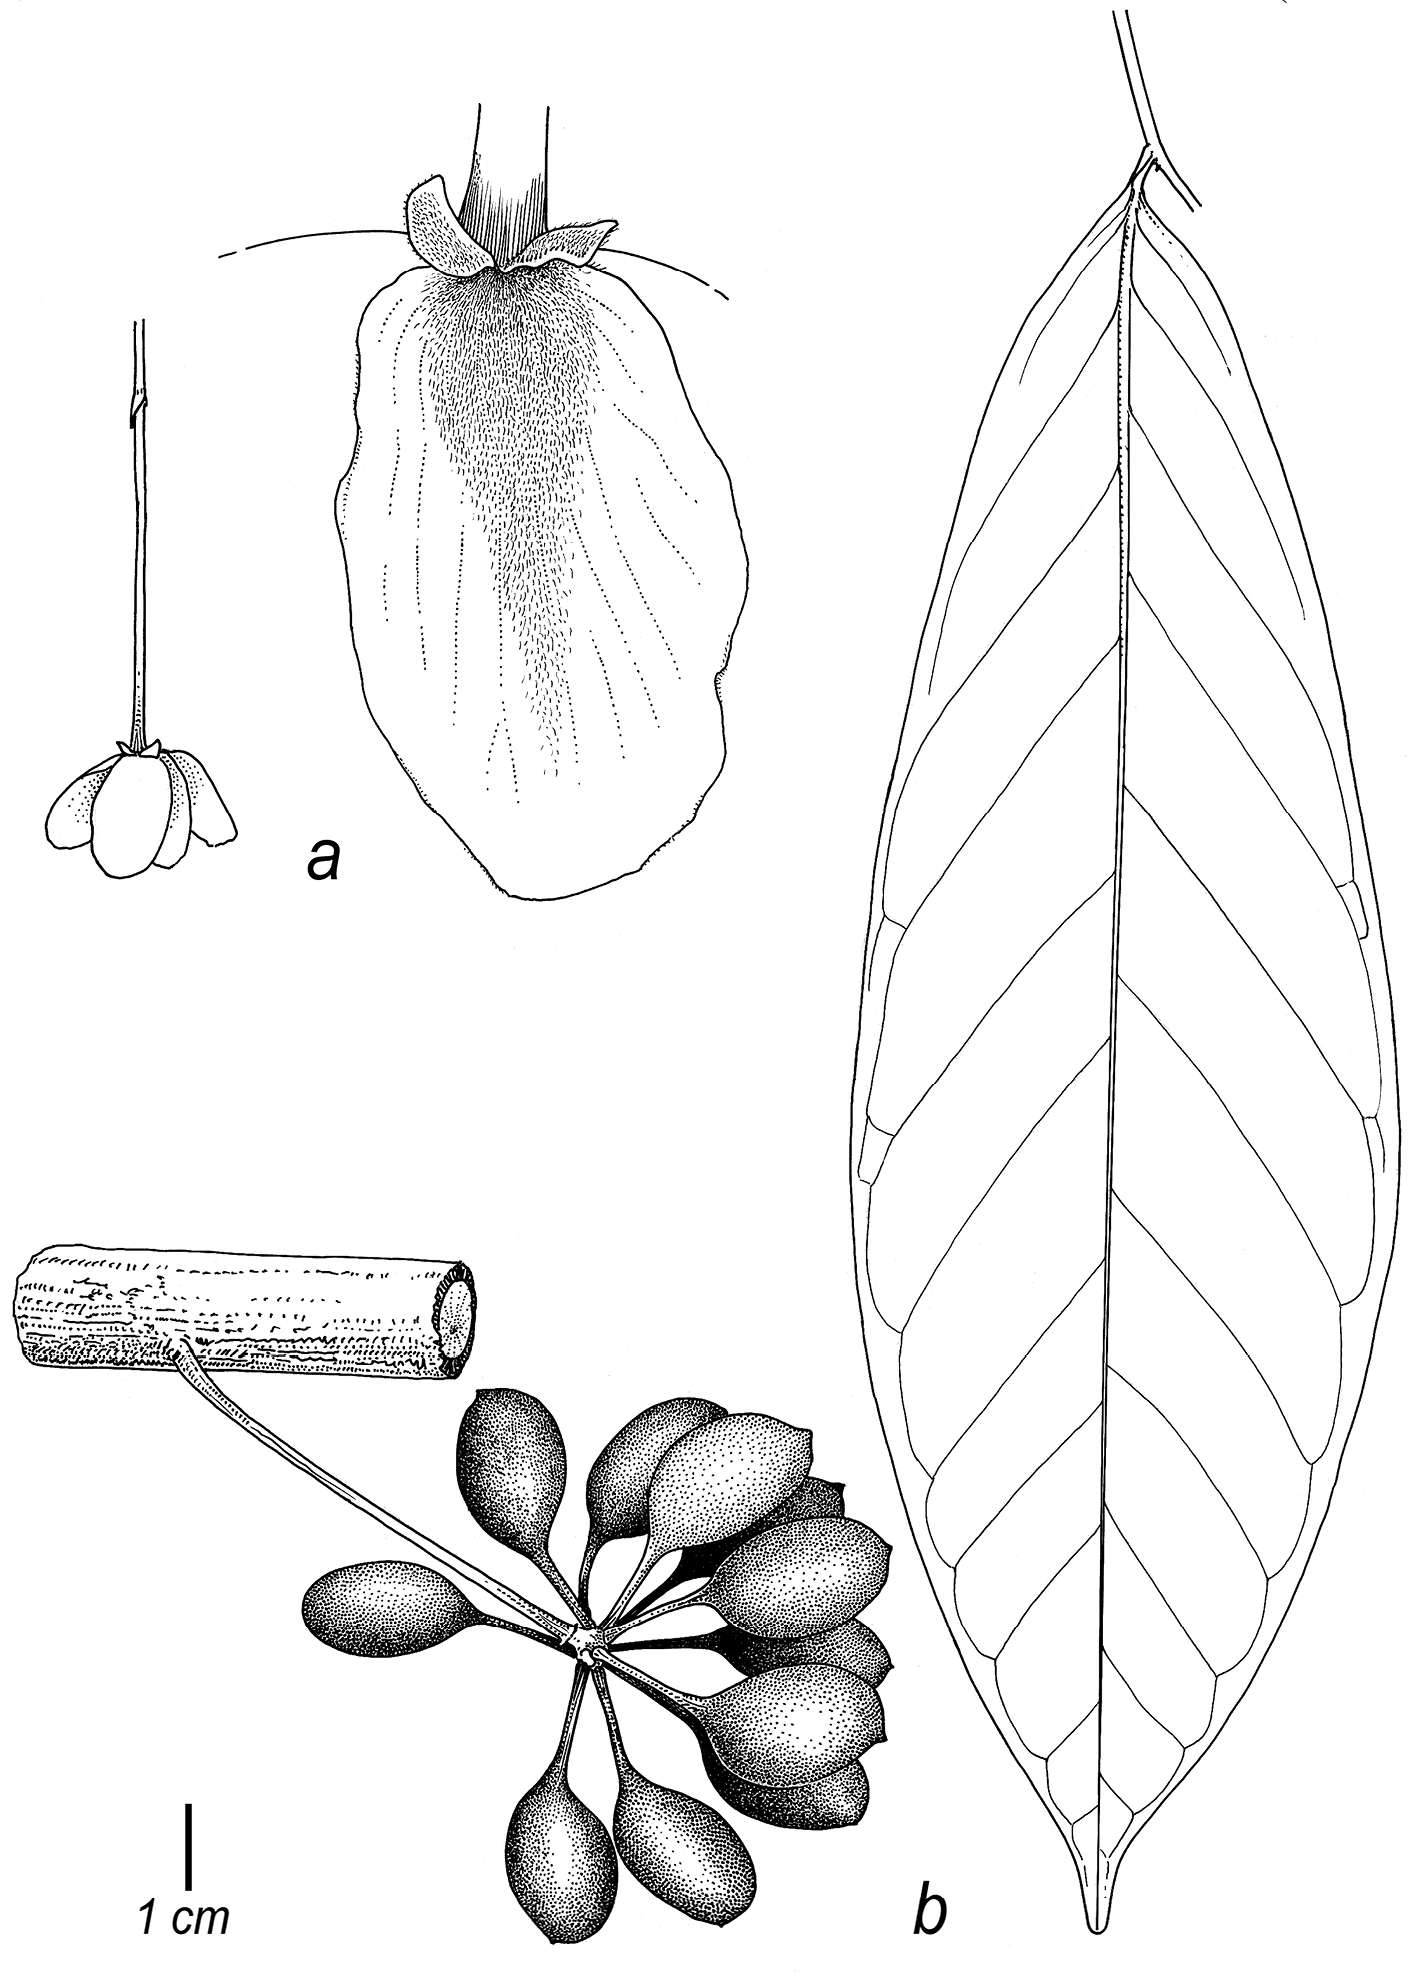 Image of Cremastosperma awaense Pirie